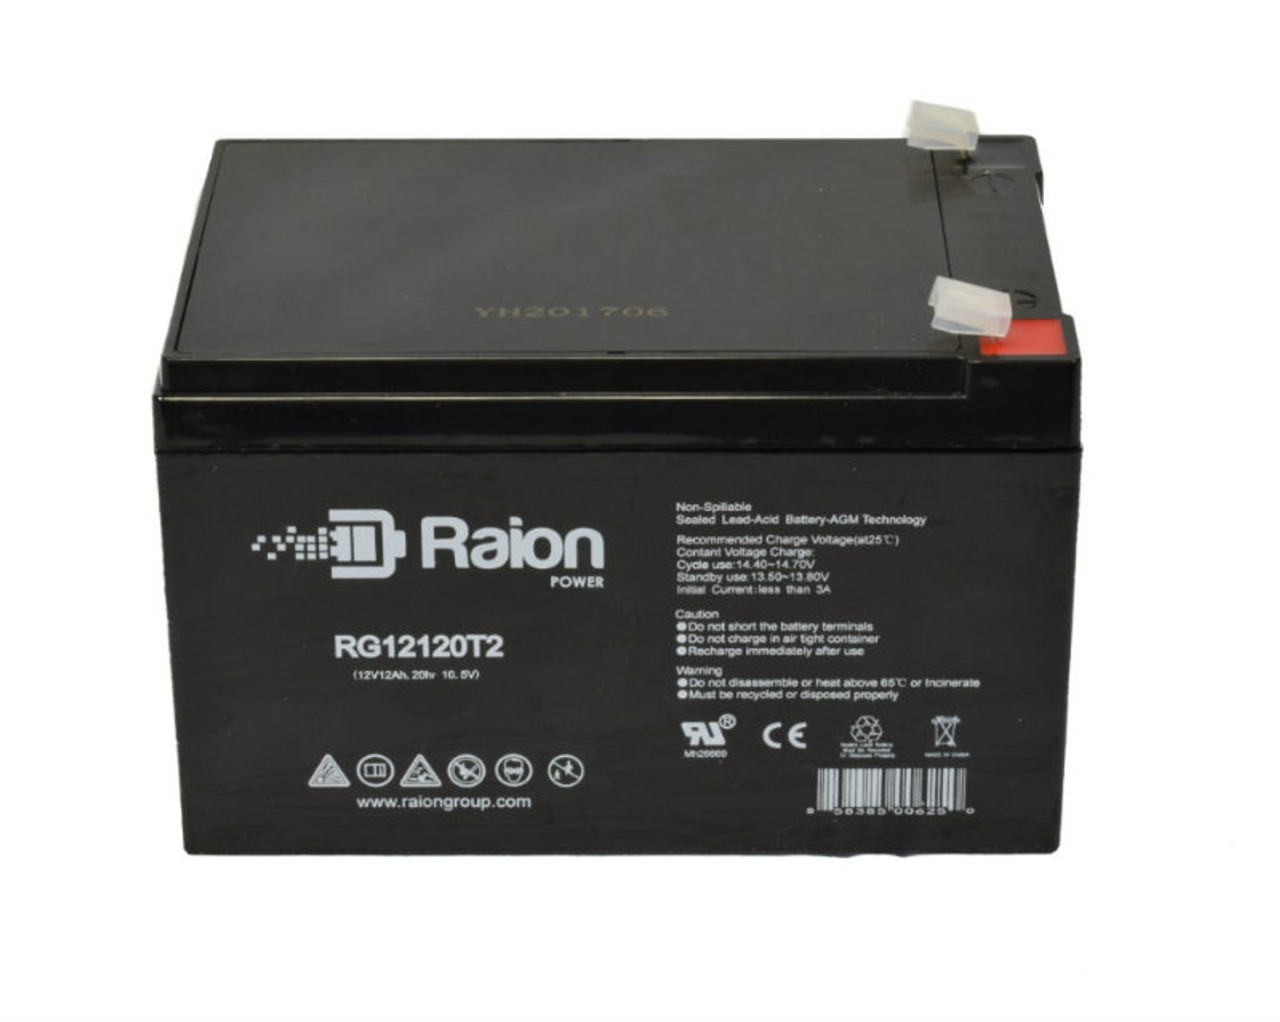 Raion Power RG12120T2 SLA Battery for Bladez eLite 300S